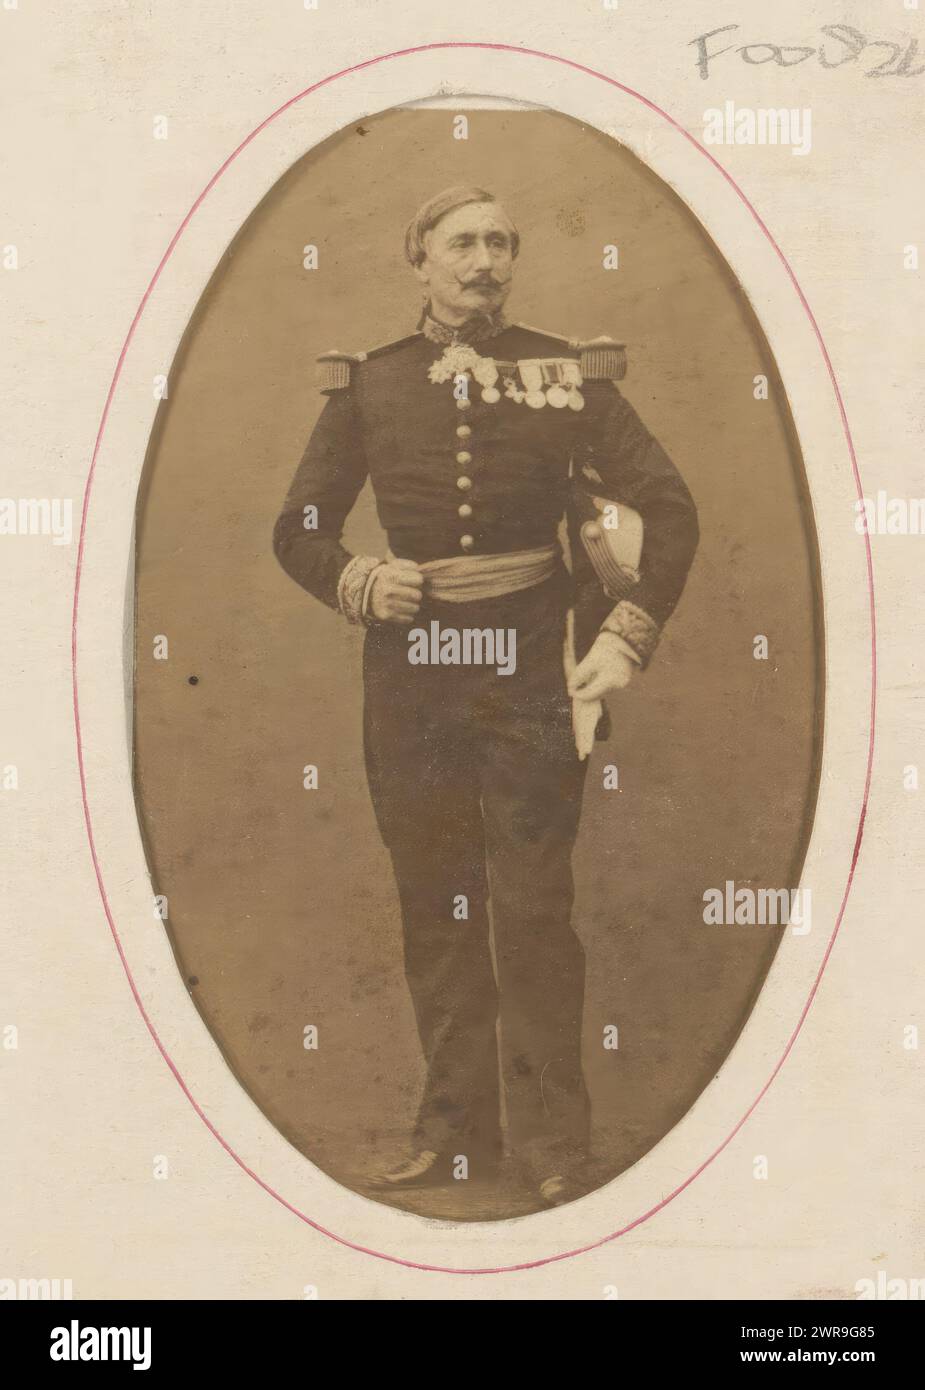 Porträt eines unbekannten Mannes in Militäruniform, dieses Foto ist Teil eines Albums. Paul Emile Pesme, Paris, 1856 - 1877, Karton, Albumendruck, Höhe 93 mm x Breite 61 mm, Foto Stockfoto